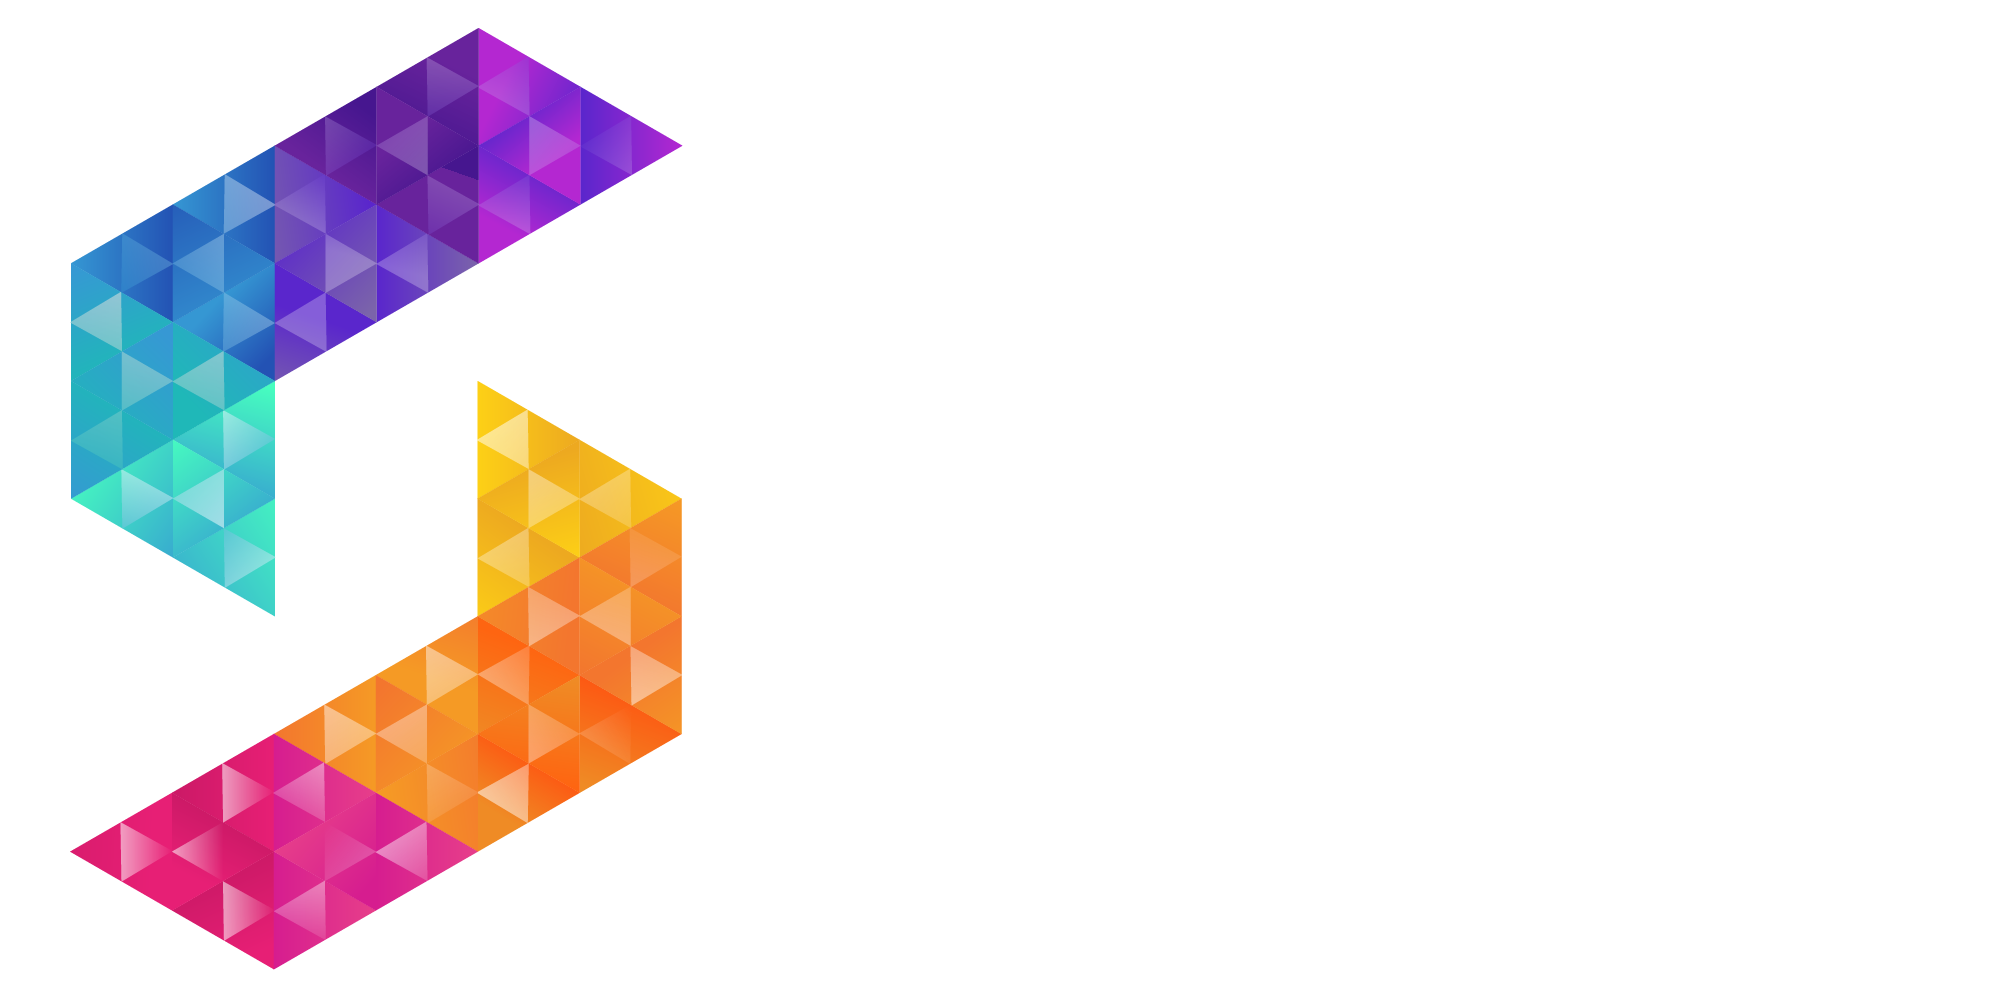 SLS Media